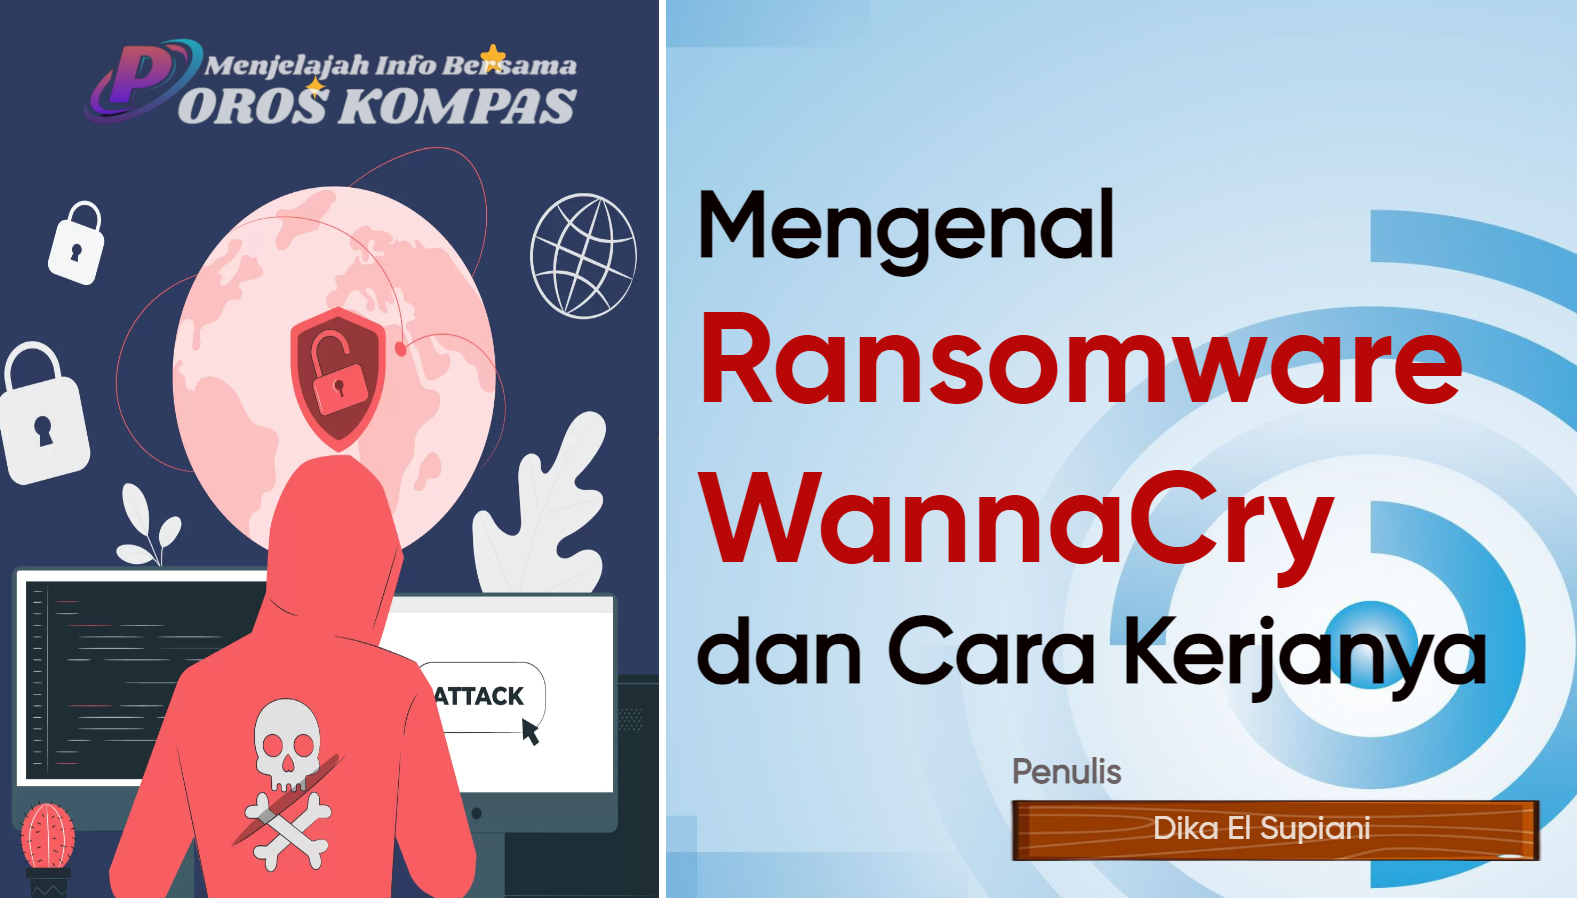 Mengenal Ransomware WannaCry dan Cara Kerjanya